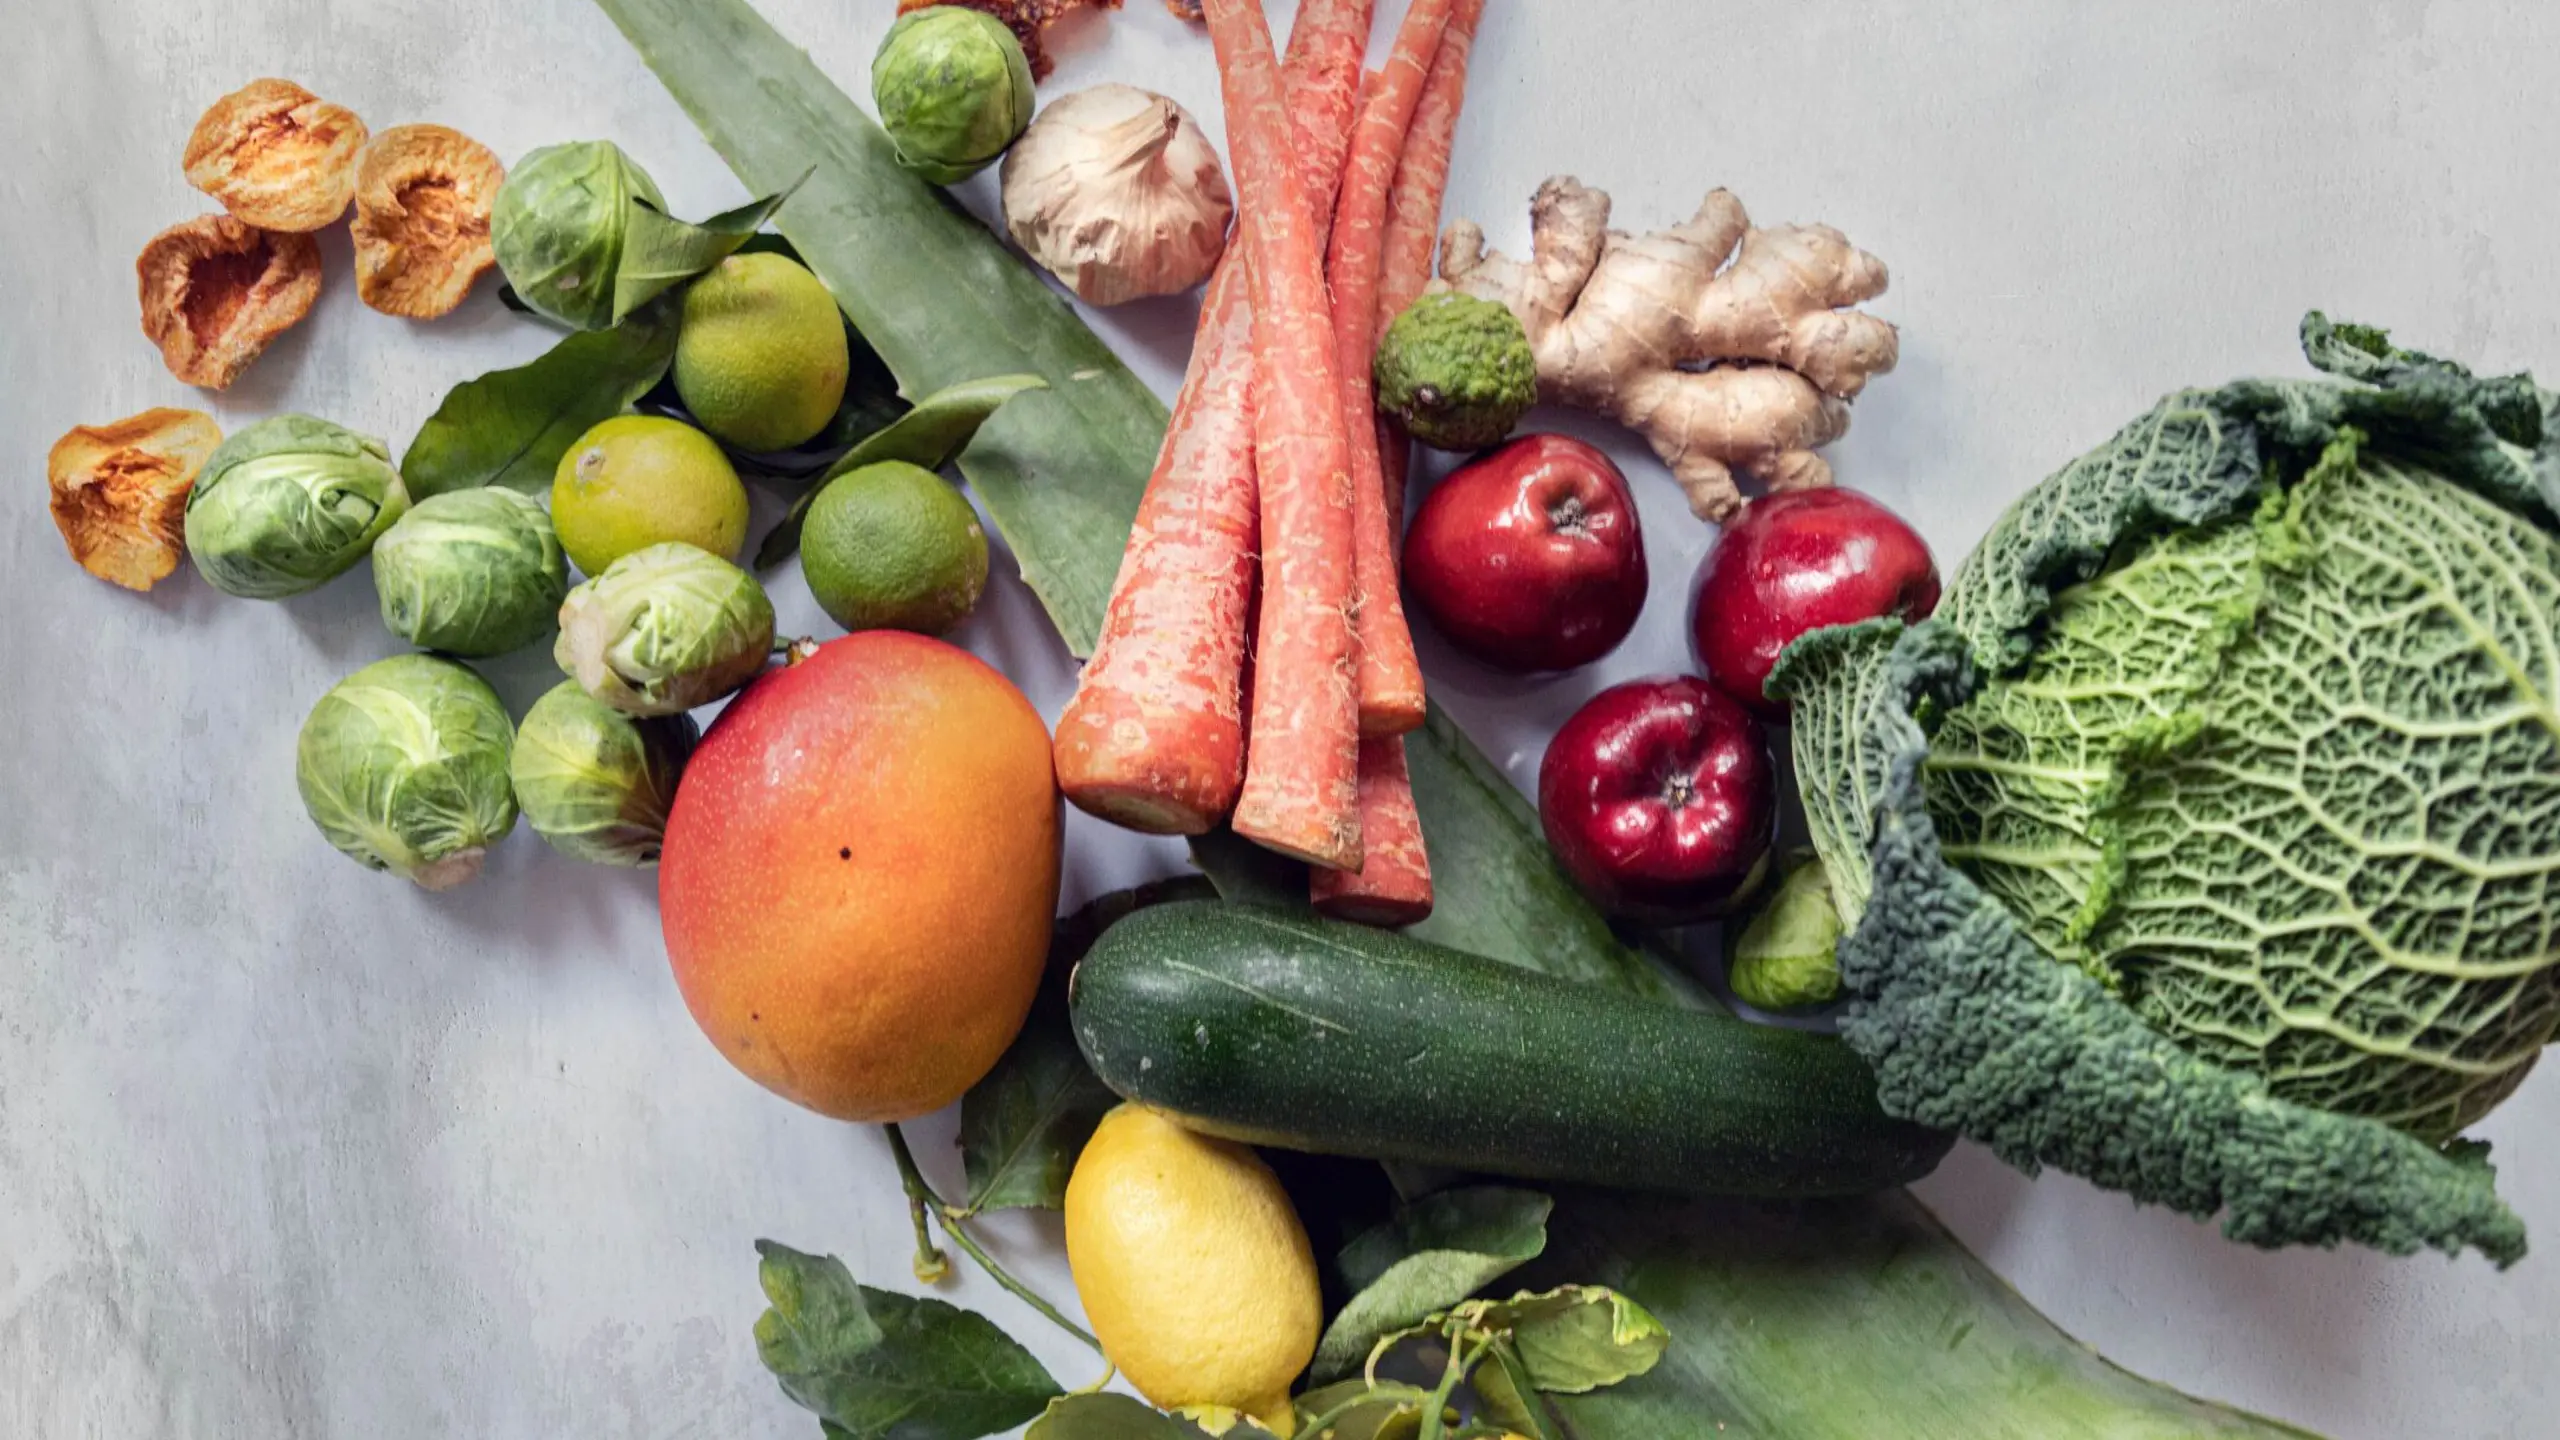 Gemüse und Obst, das auf einem Tisch liegt